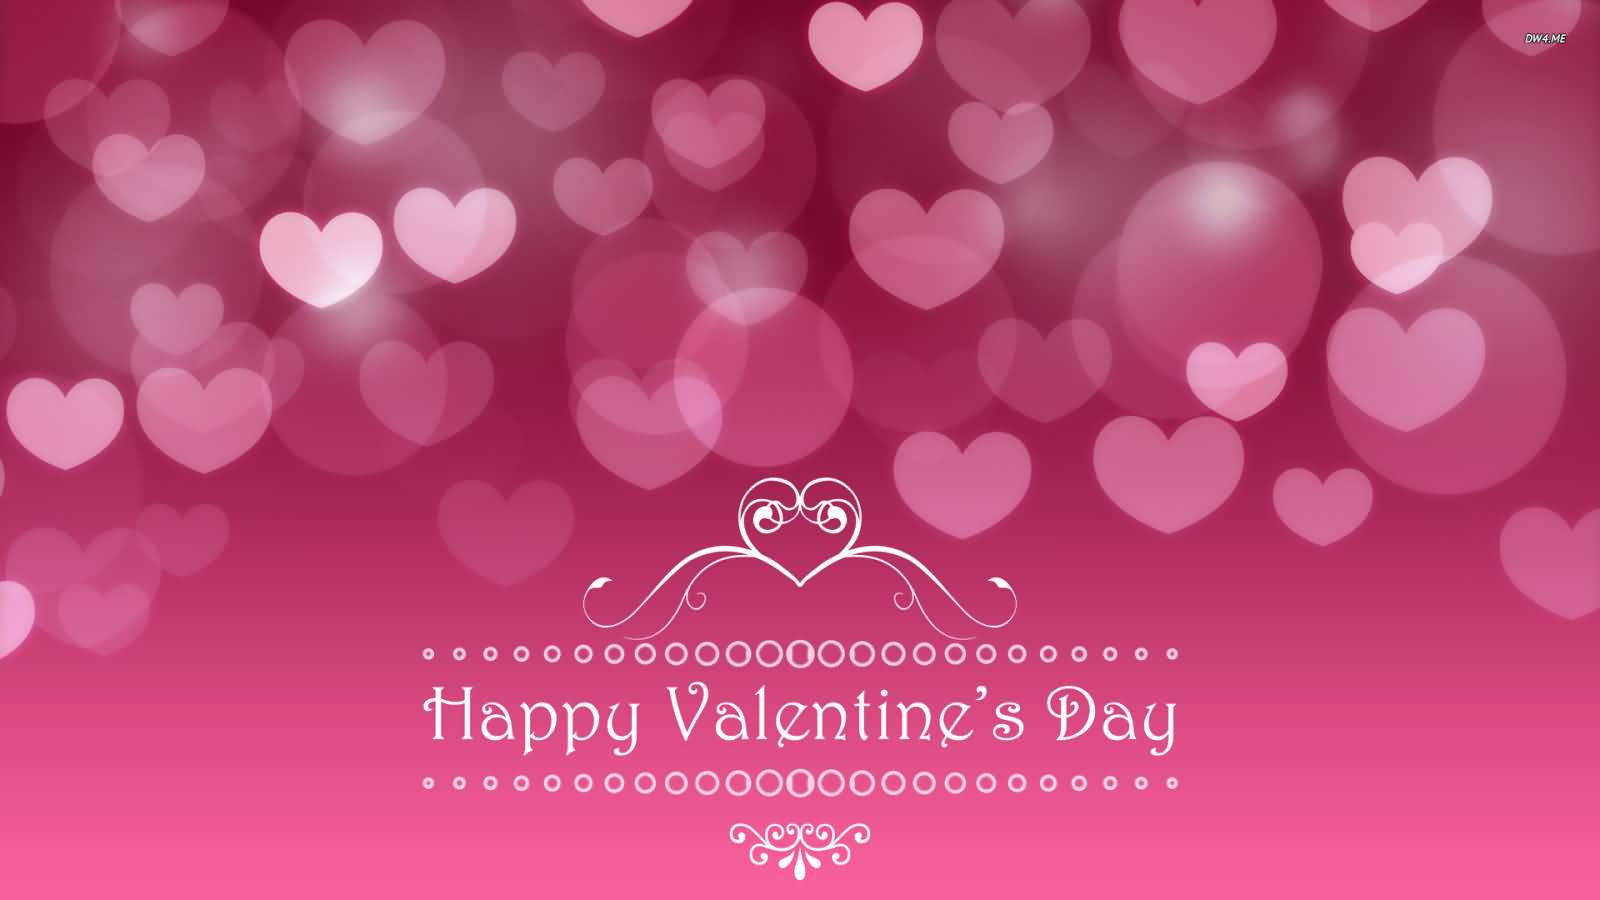 Happy Valentine's Day Pink Background Wallpaper